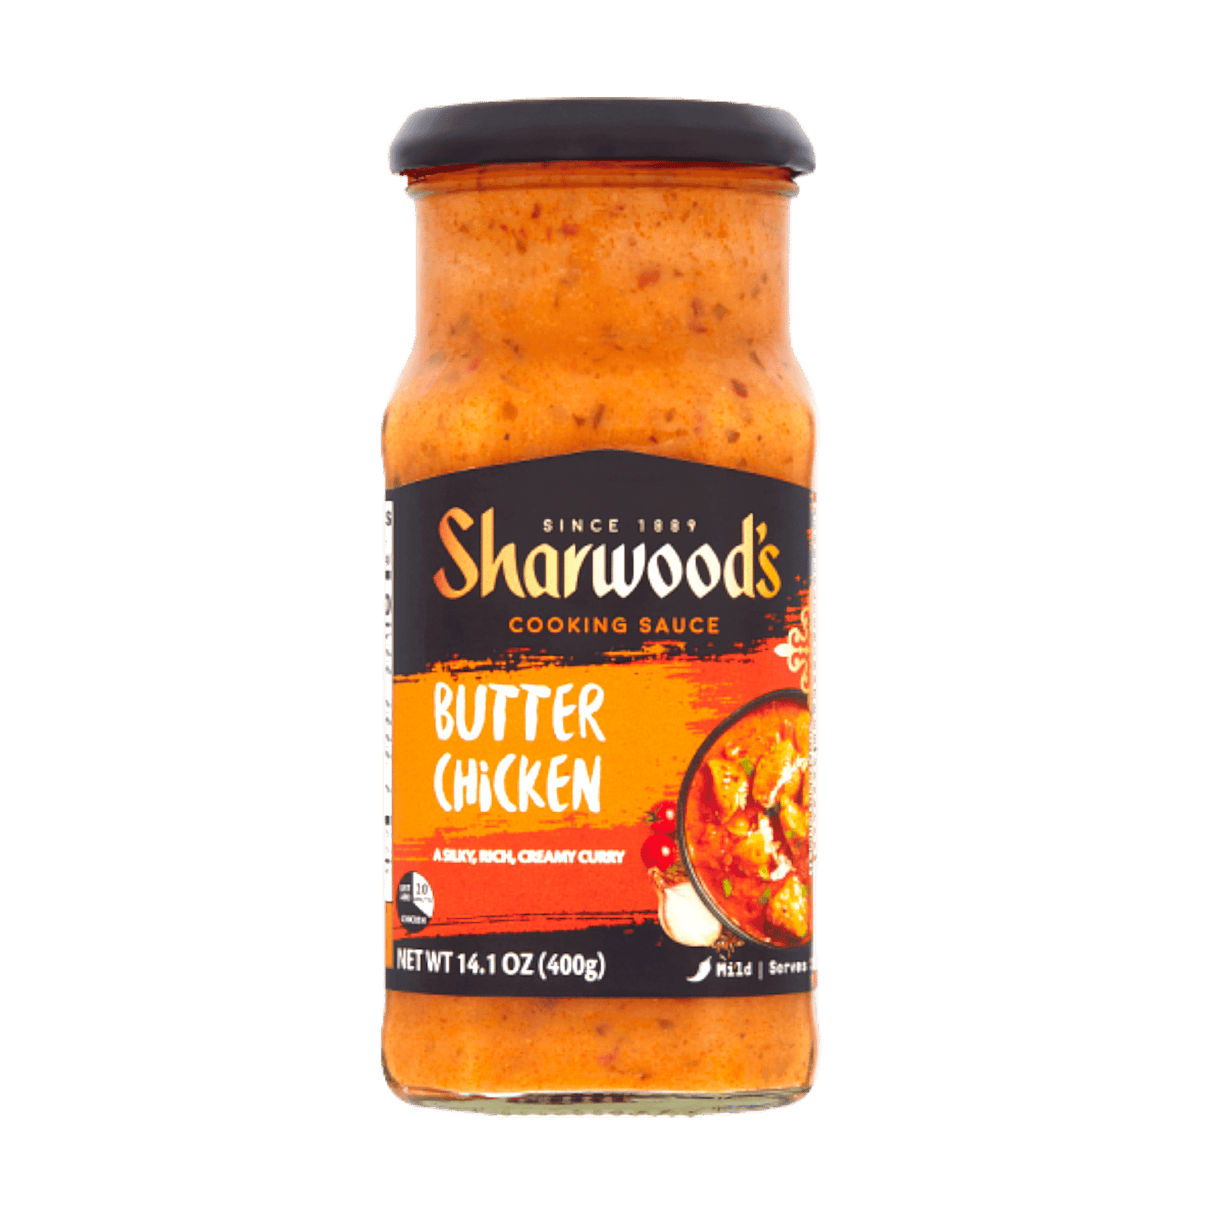 Sharwoods Butter Chicken Cooking Sauce